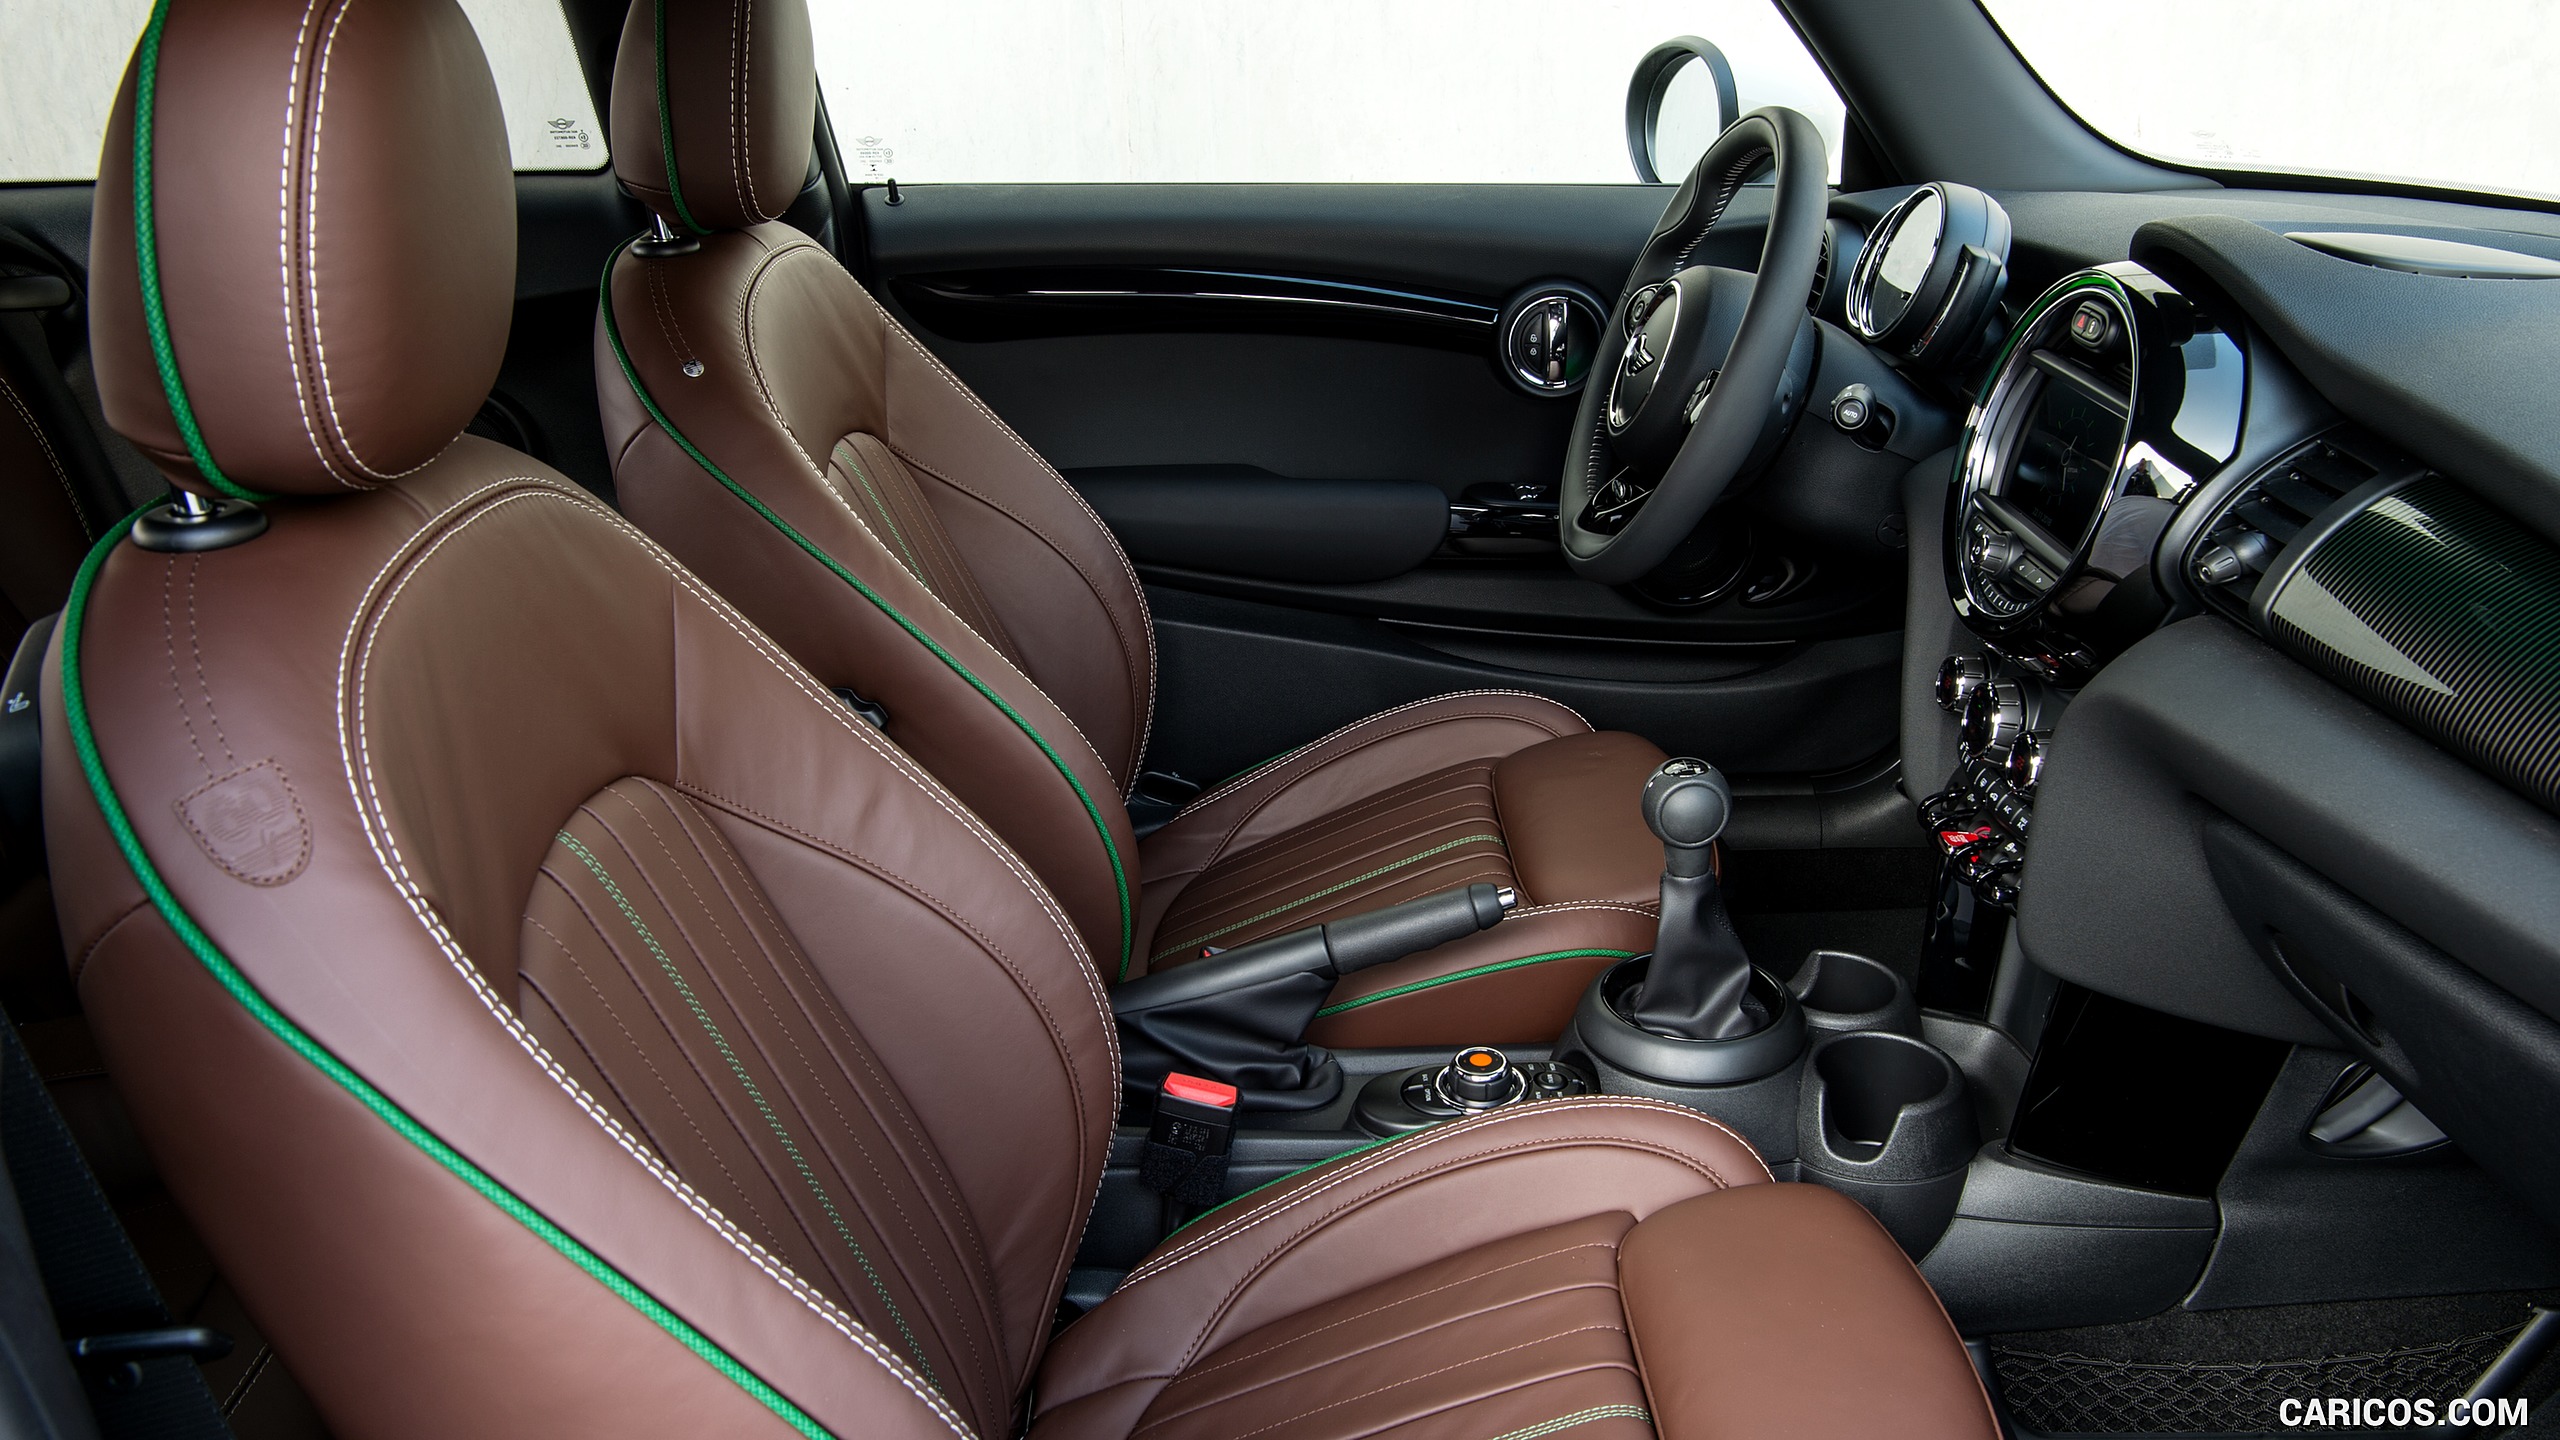 2019 MINI Cooper 3-Door 60 Years Edition - Interior, Front Seats, #86 of 102